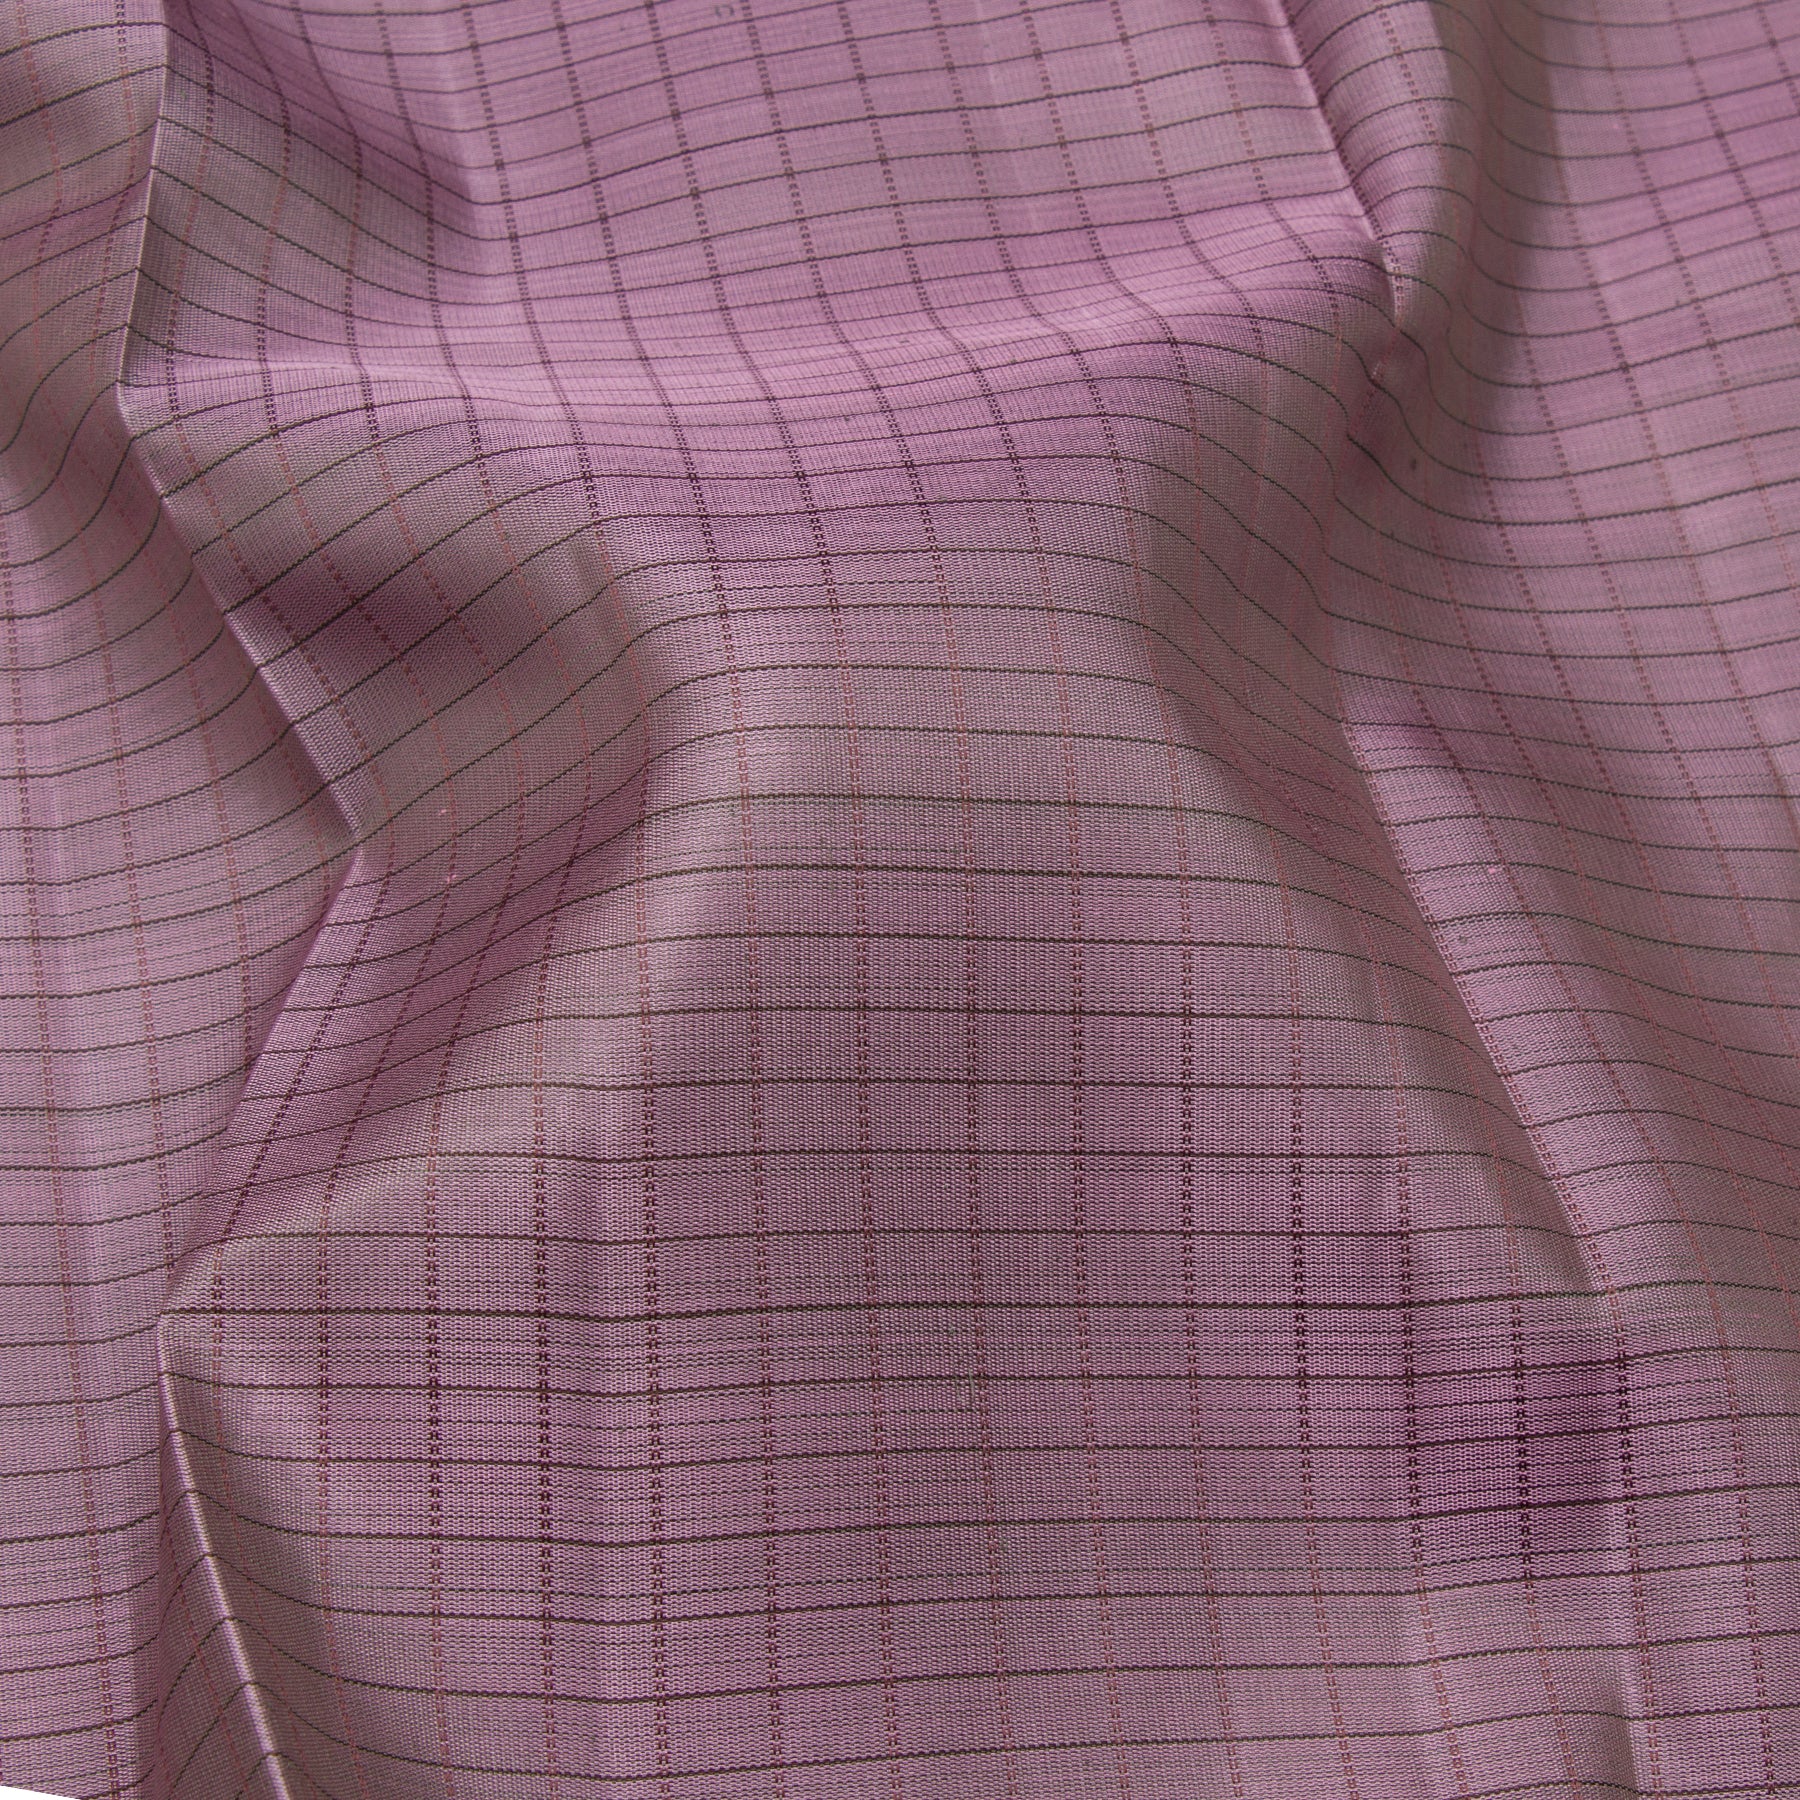 Kanakavalli Kanjivaram Silk Sari 23-599-HS001-12535 - Fabric View